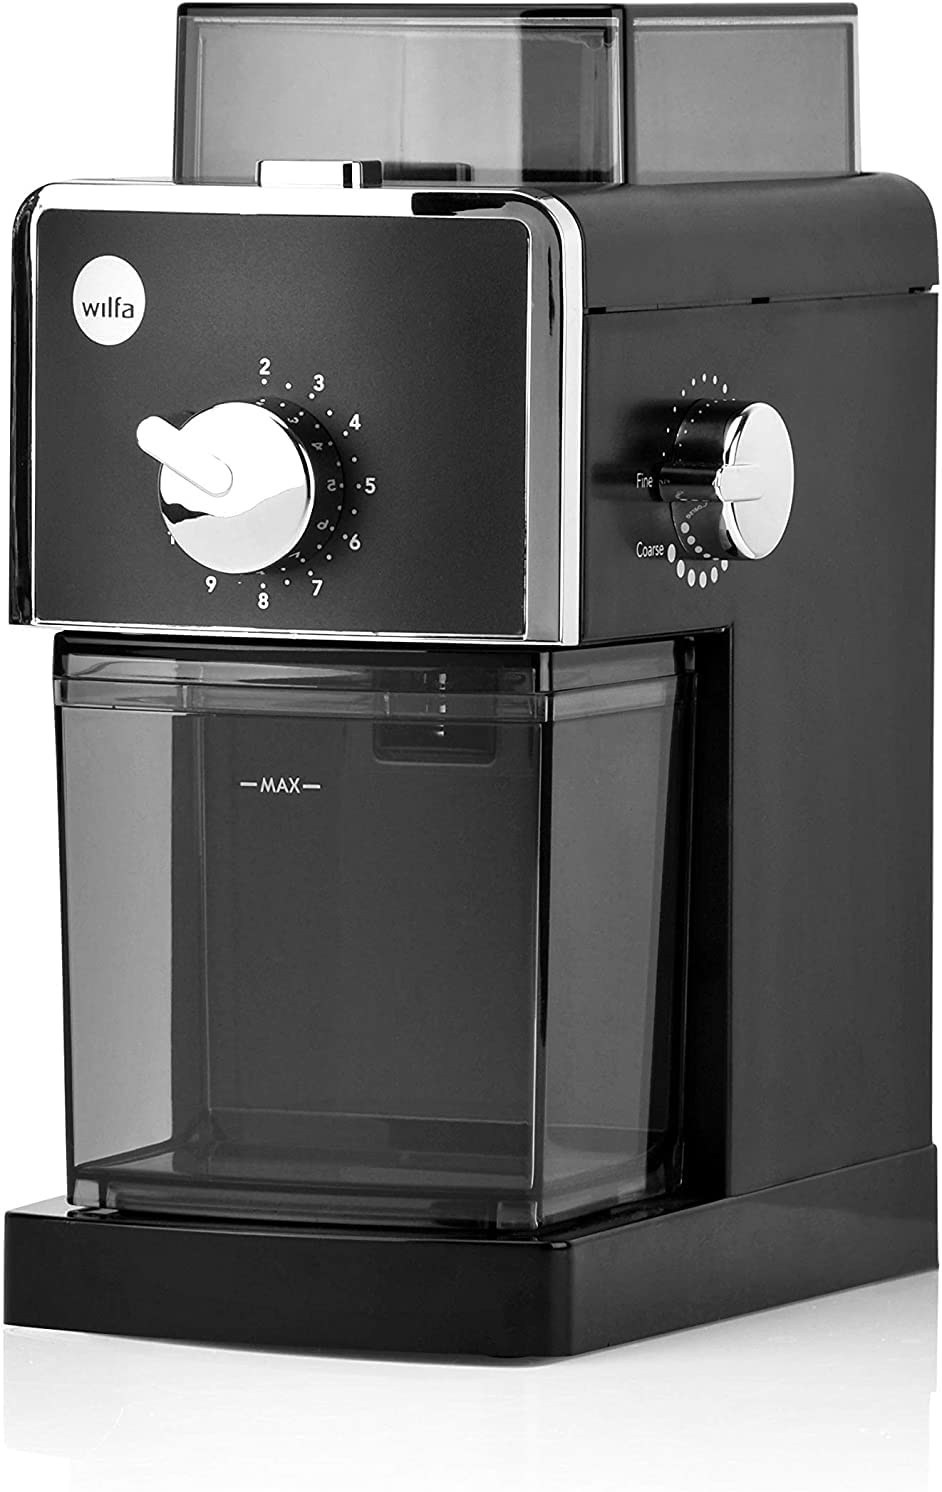 Wilfa IL SOLITO Kaffeemühle – elektrische Mühle mit Timer-Funktion – 17 Mahlgrade – 180gr Bohnenbehälter – Autostopp-Funktion – Auto-Abschaltung, schwarz